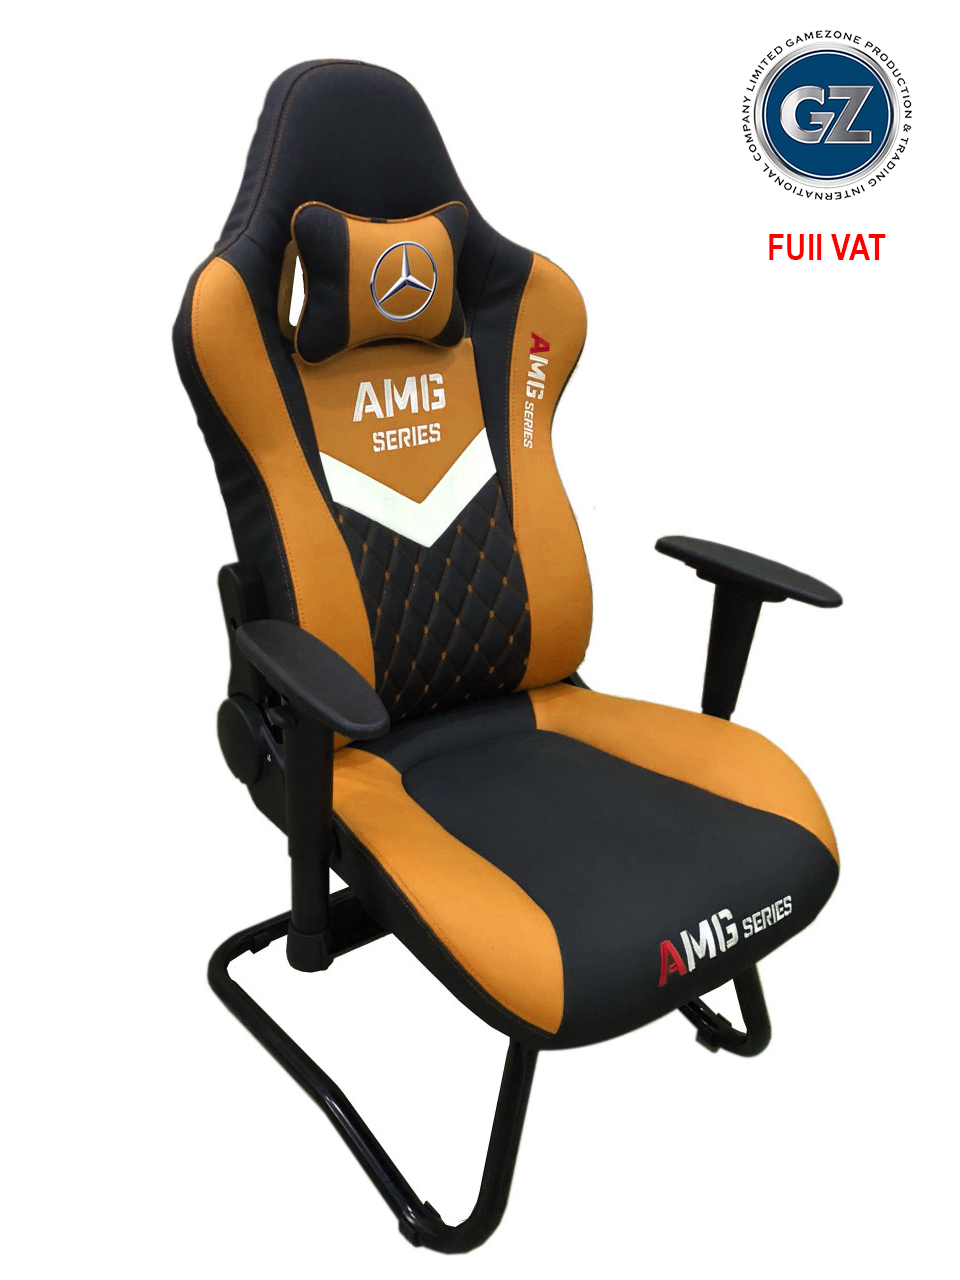 Ghế Game - GZ AMG series Chân Quỳ - Chuyên Gaming - màu cam đen